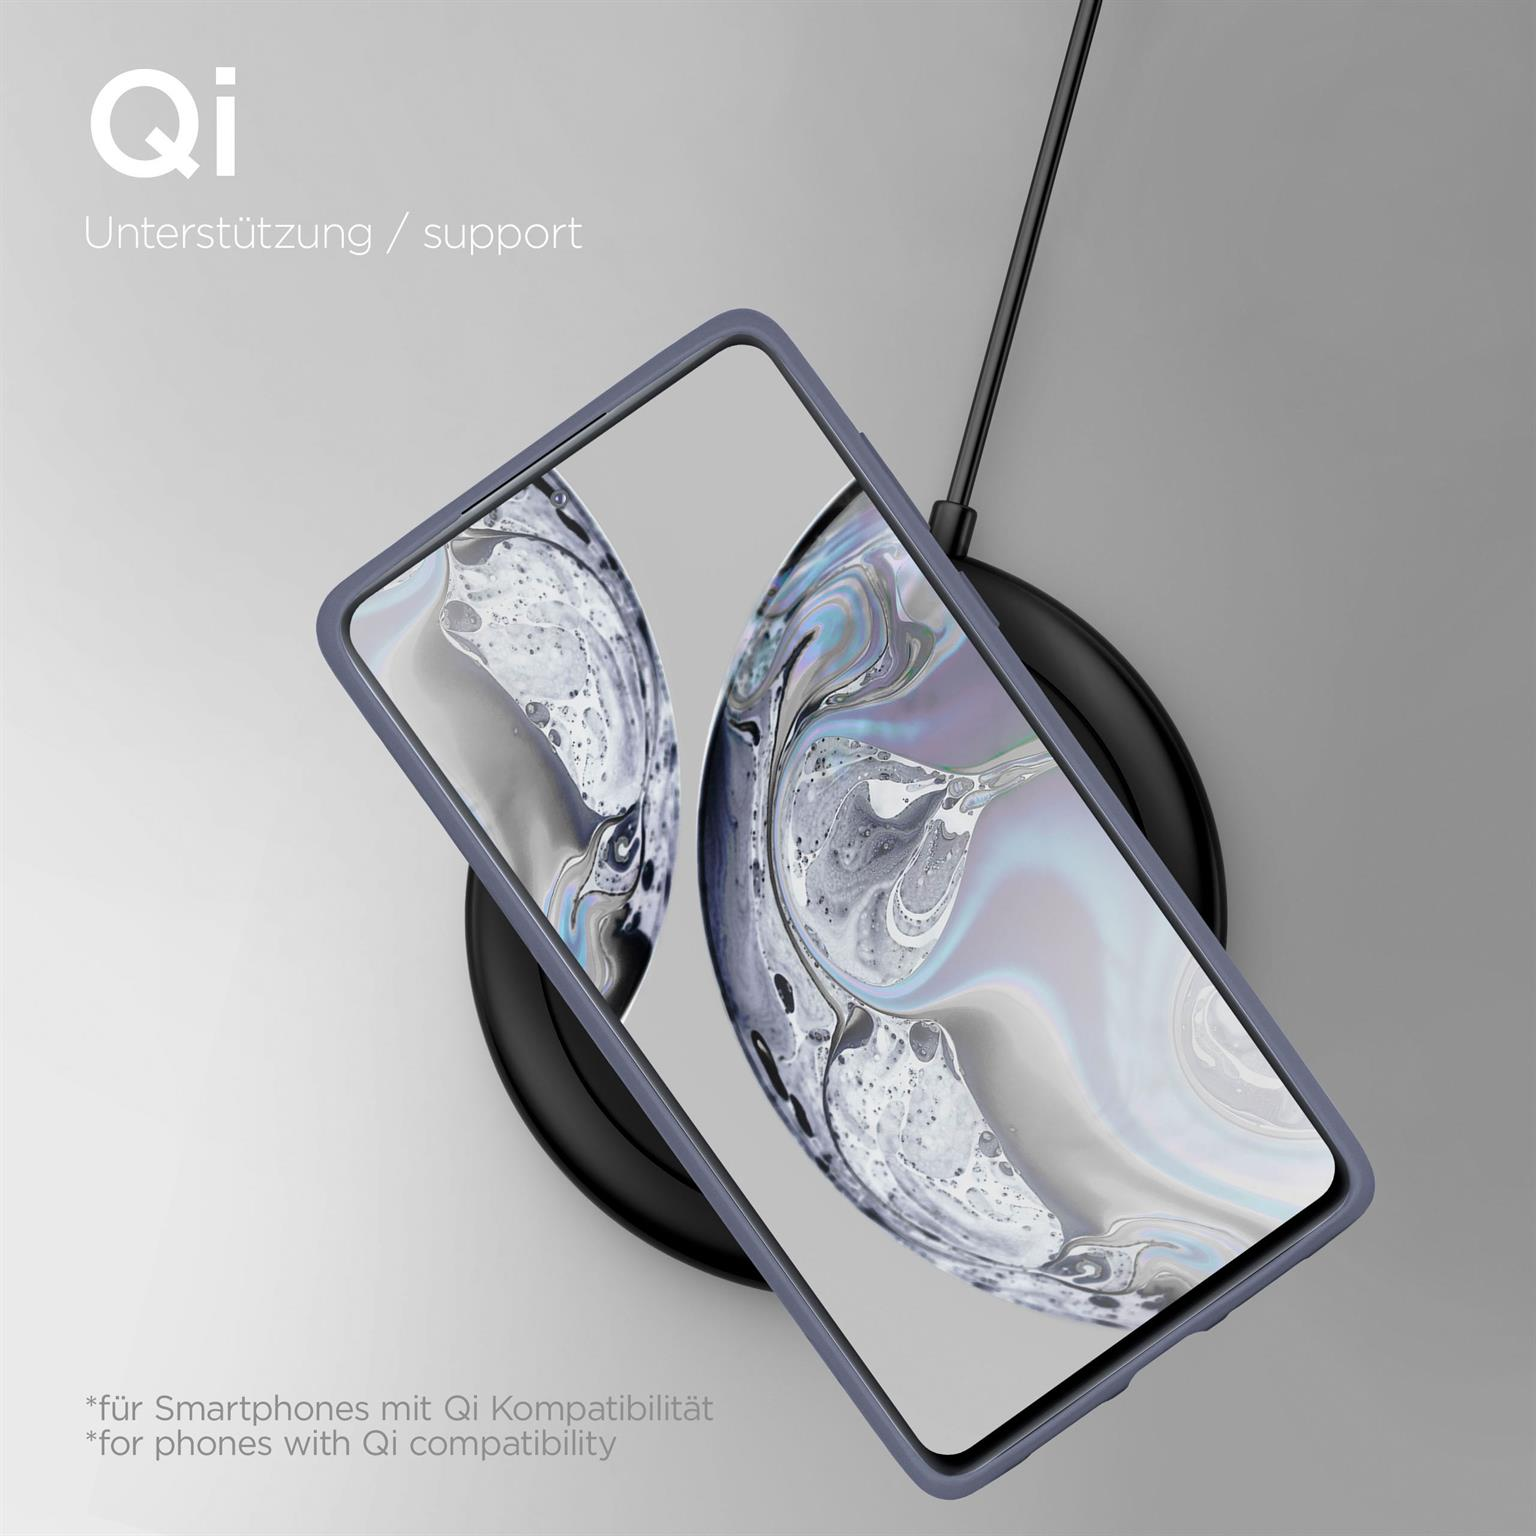 FE 5G, S20 Samsung, ONEFLOW Case, Backcover, Lavendelgrau Galaxy Soft